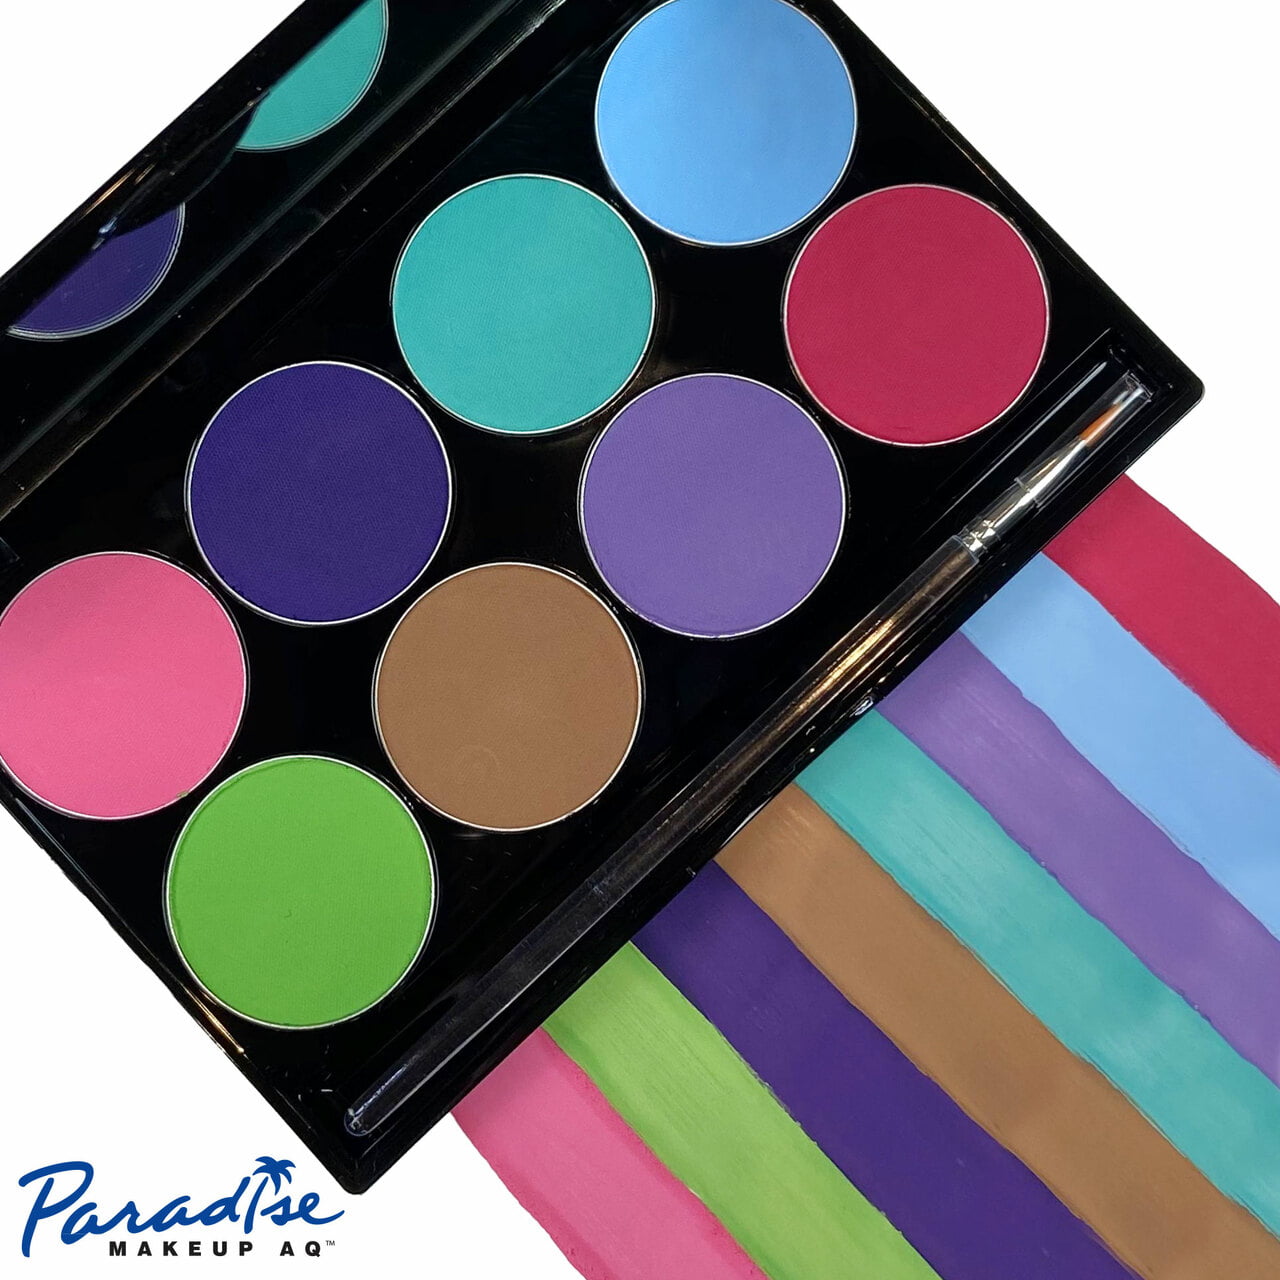 Mehron Paradise Makeup AQ – 8 Color Palette – Pastel